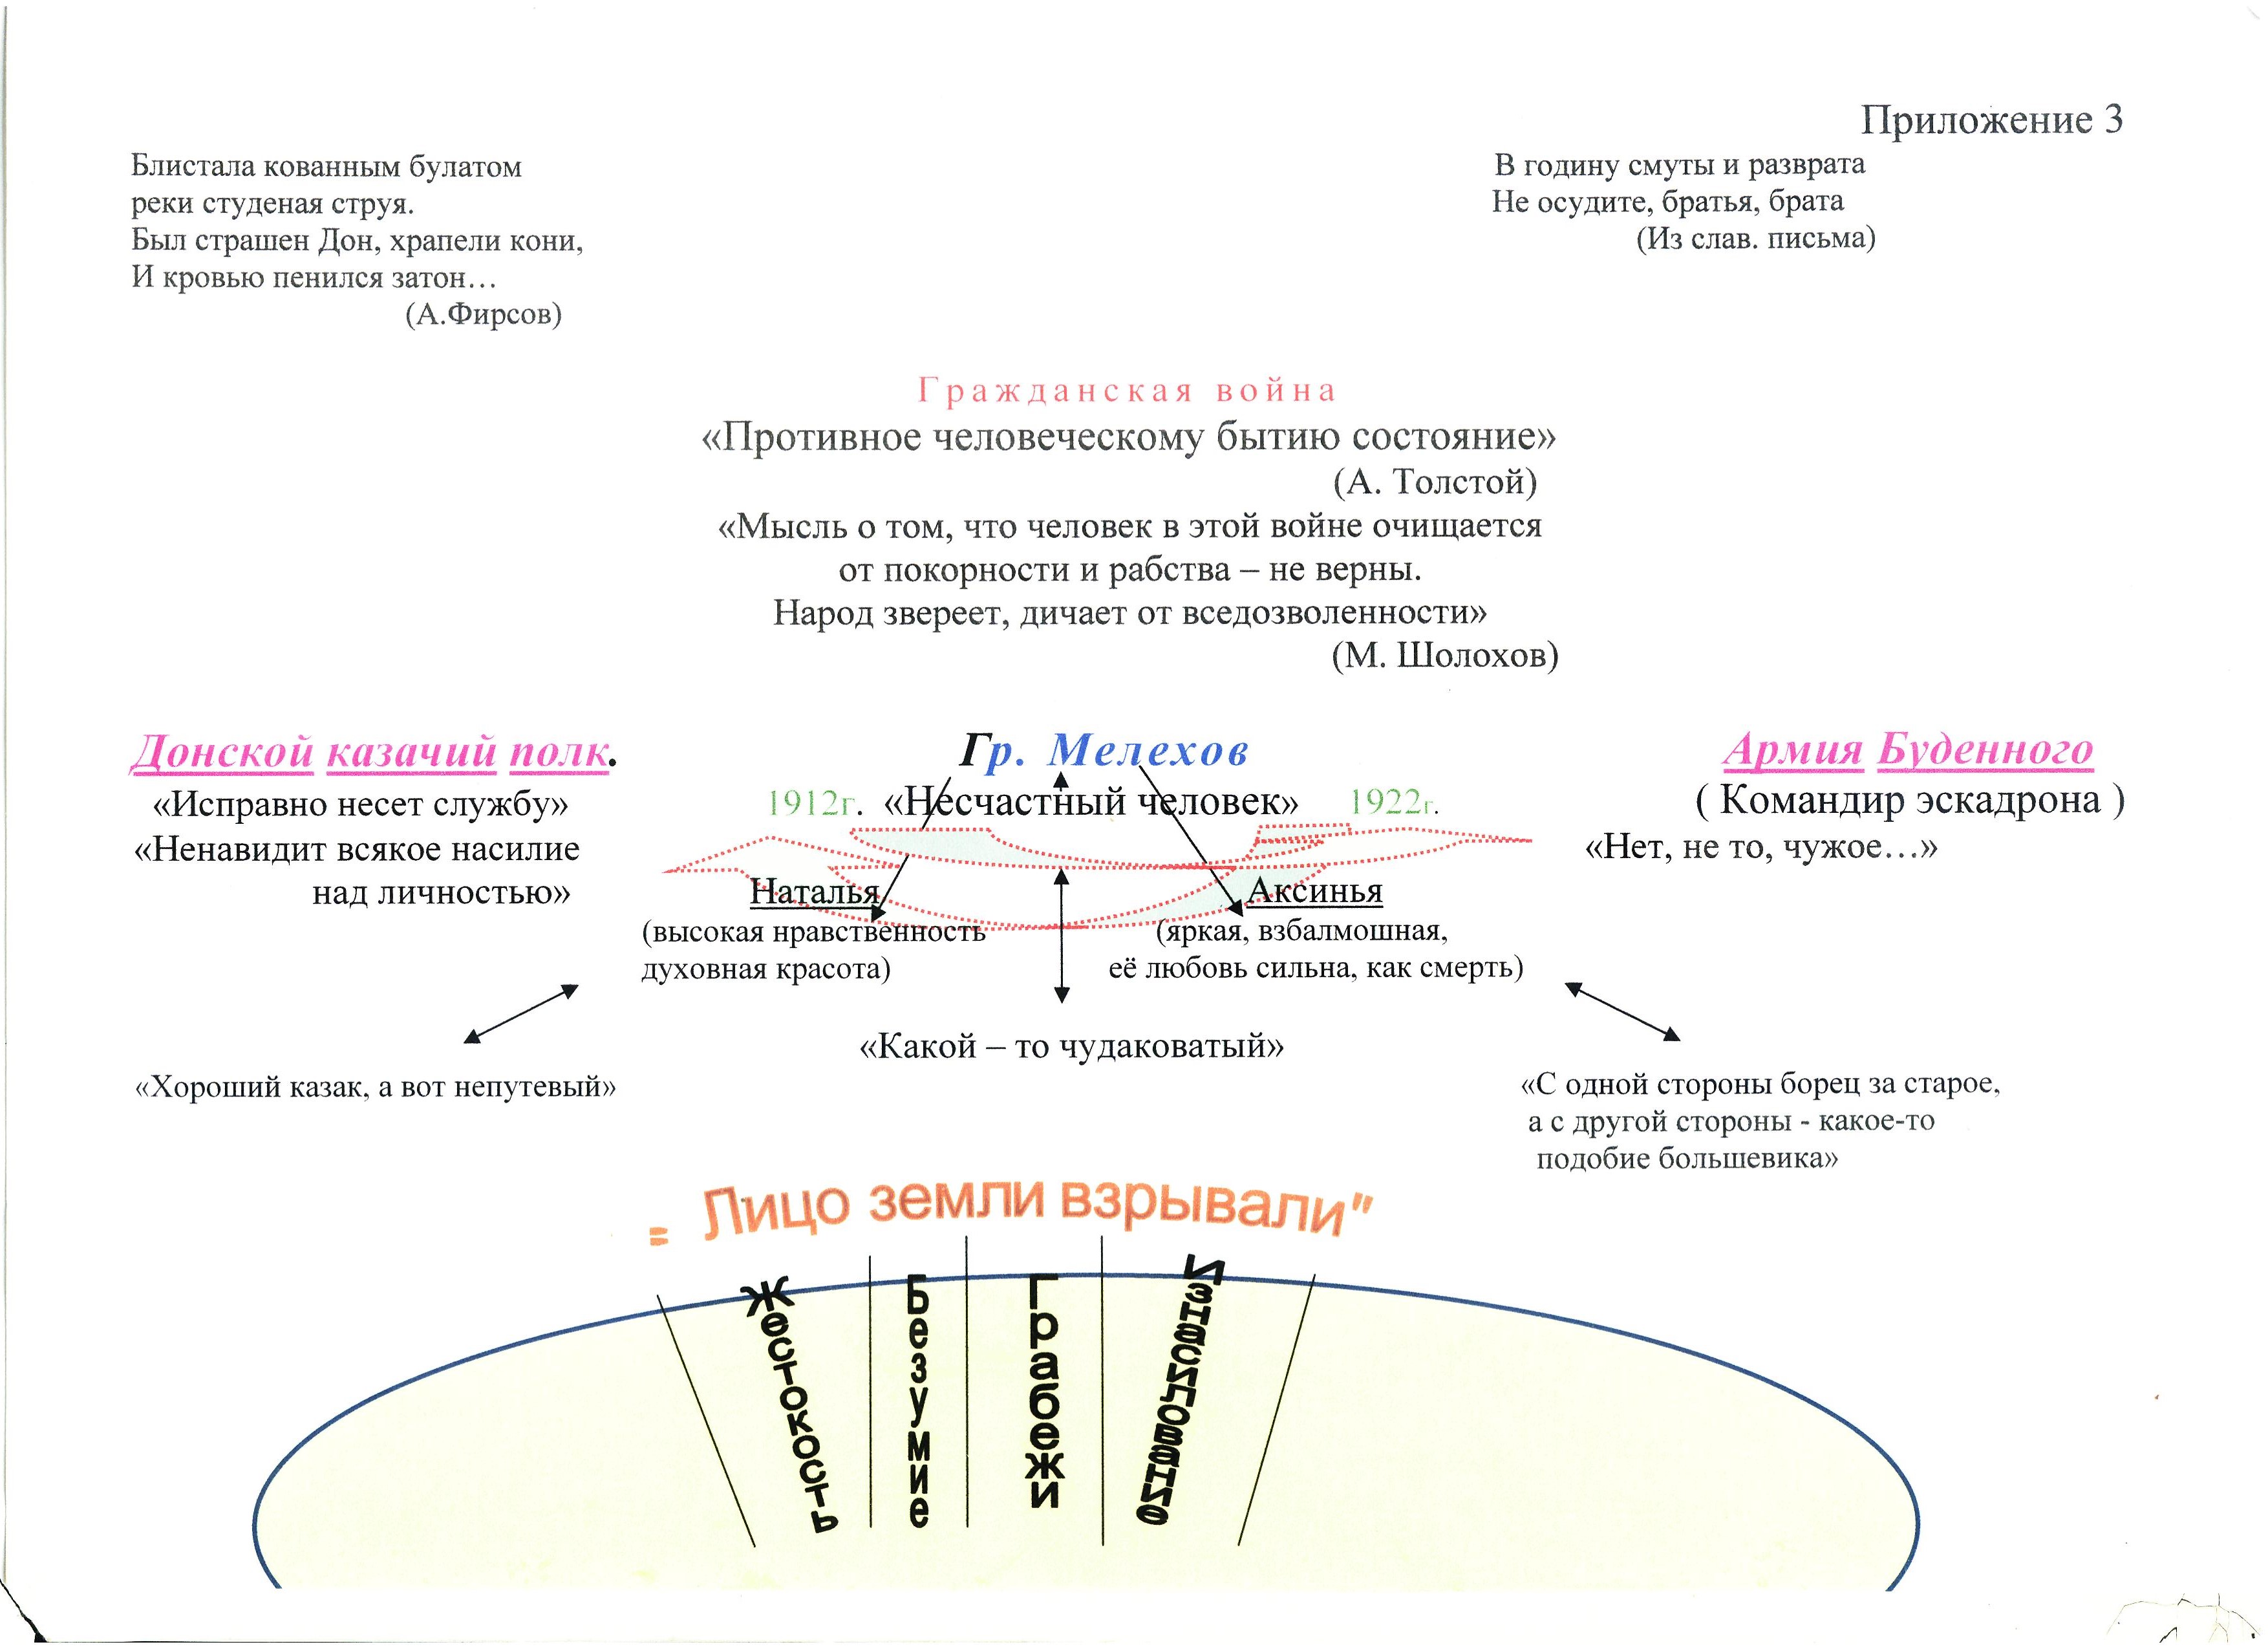 Этапы жизни мелехова. Схема жизненного пути Мелехова. Путь исканий Григория Мелехова таблица.